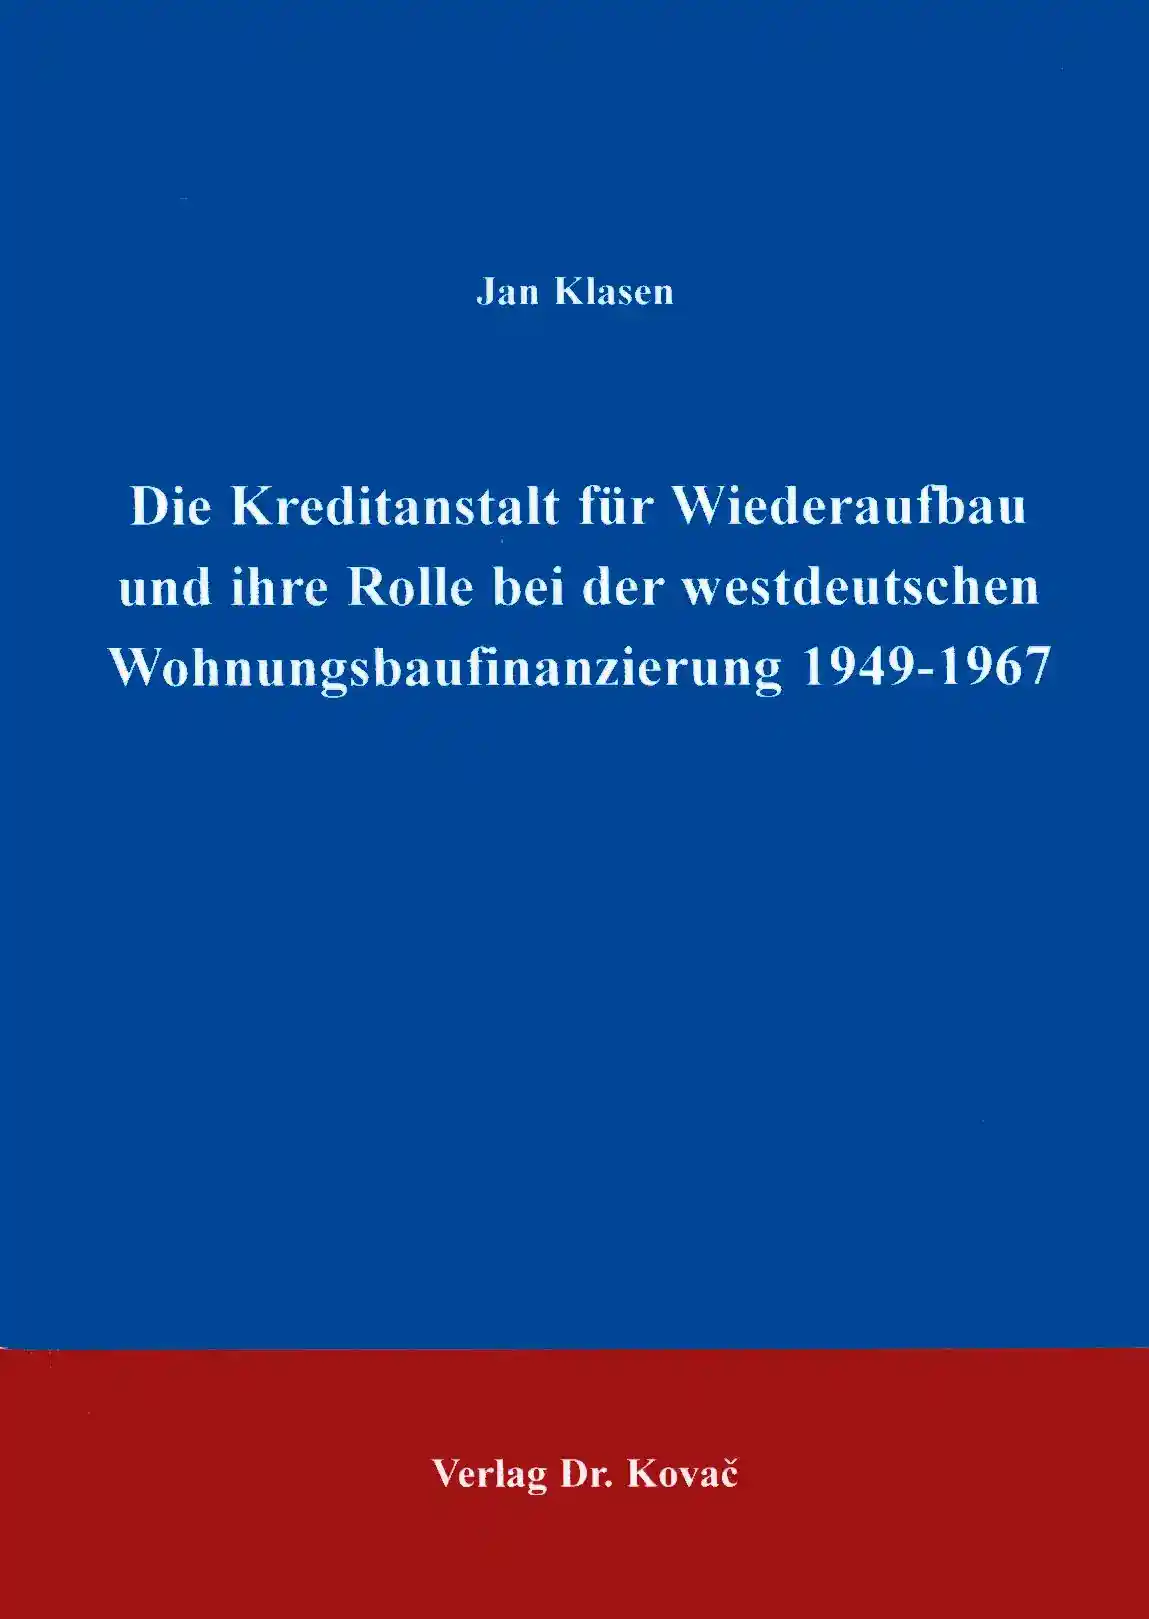 Die Kreditanstalt für Wiederaufbau und ihre Rolle in der westdeutschen Wohnungsbaufinanzierung 1949-1967 (Dissertation)